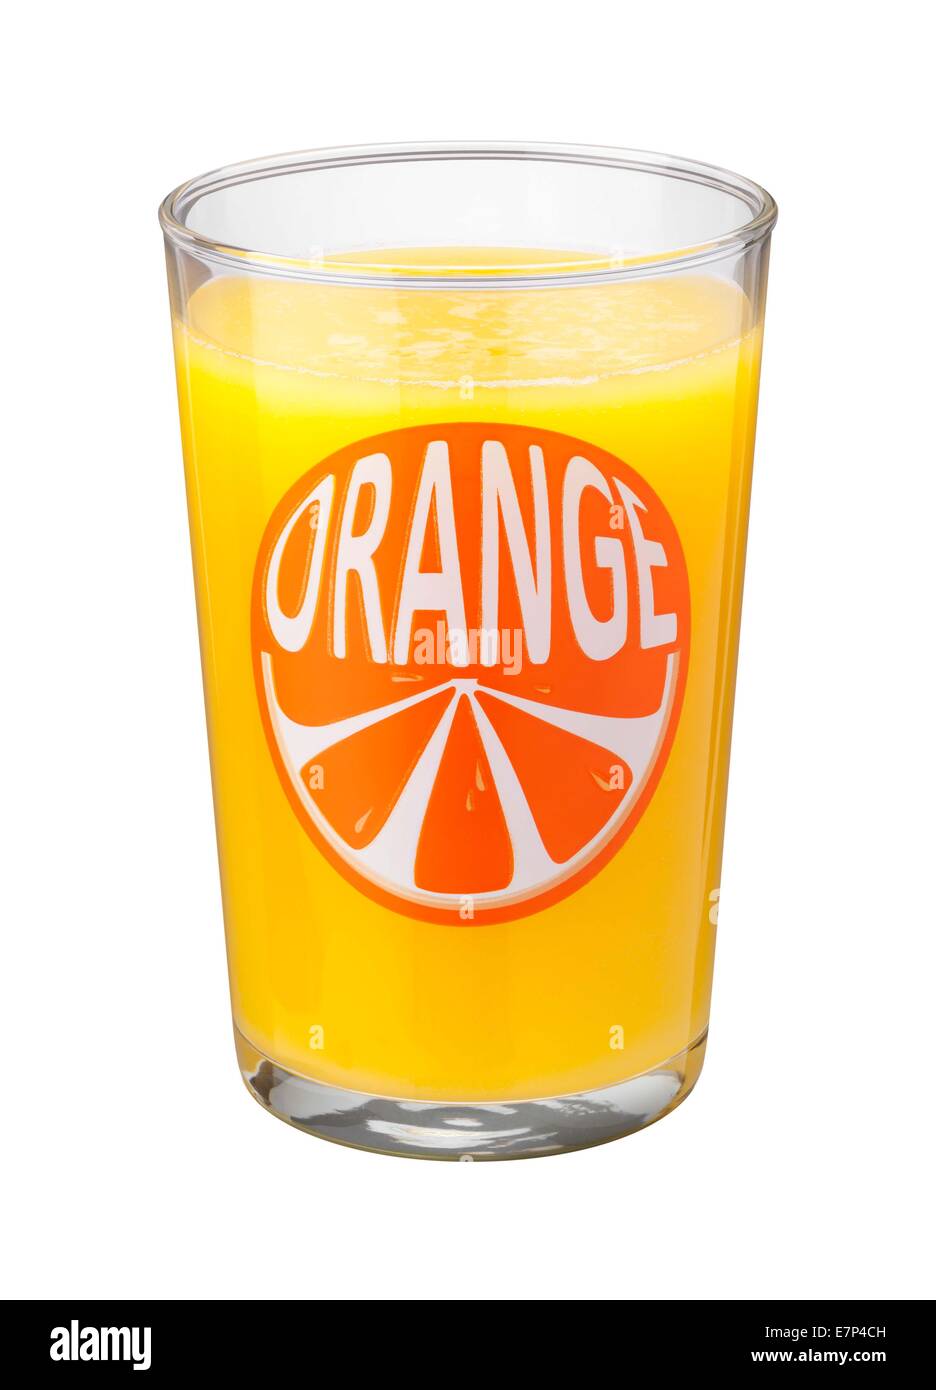 Orange Juice Glass isolated on a white background Stock Photo